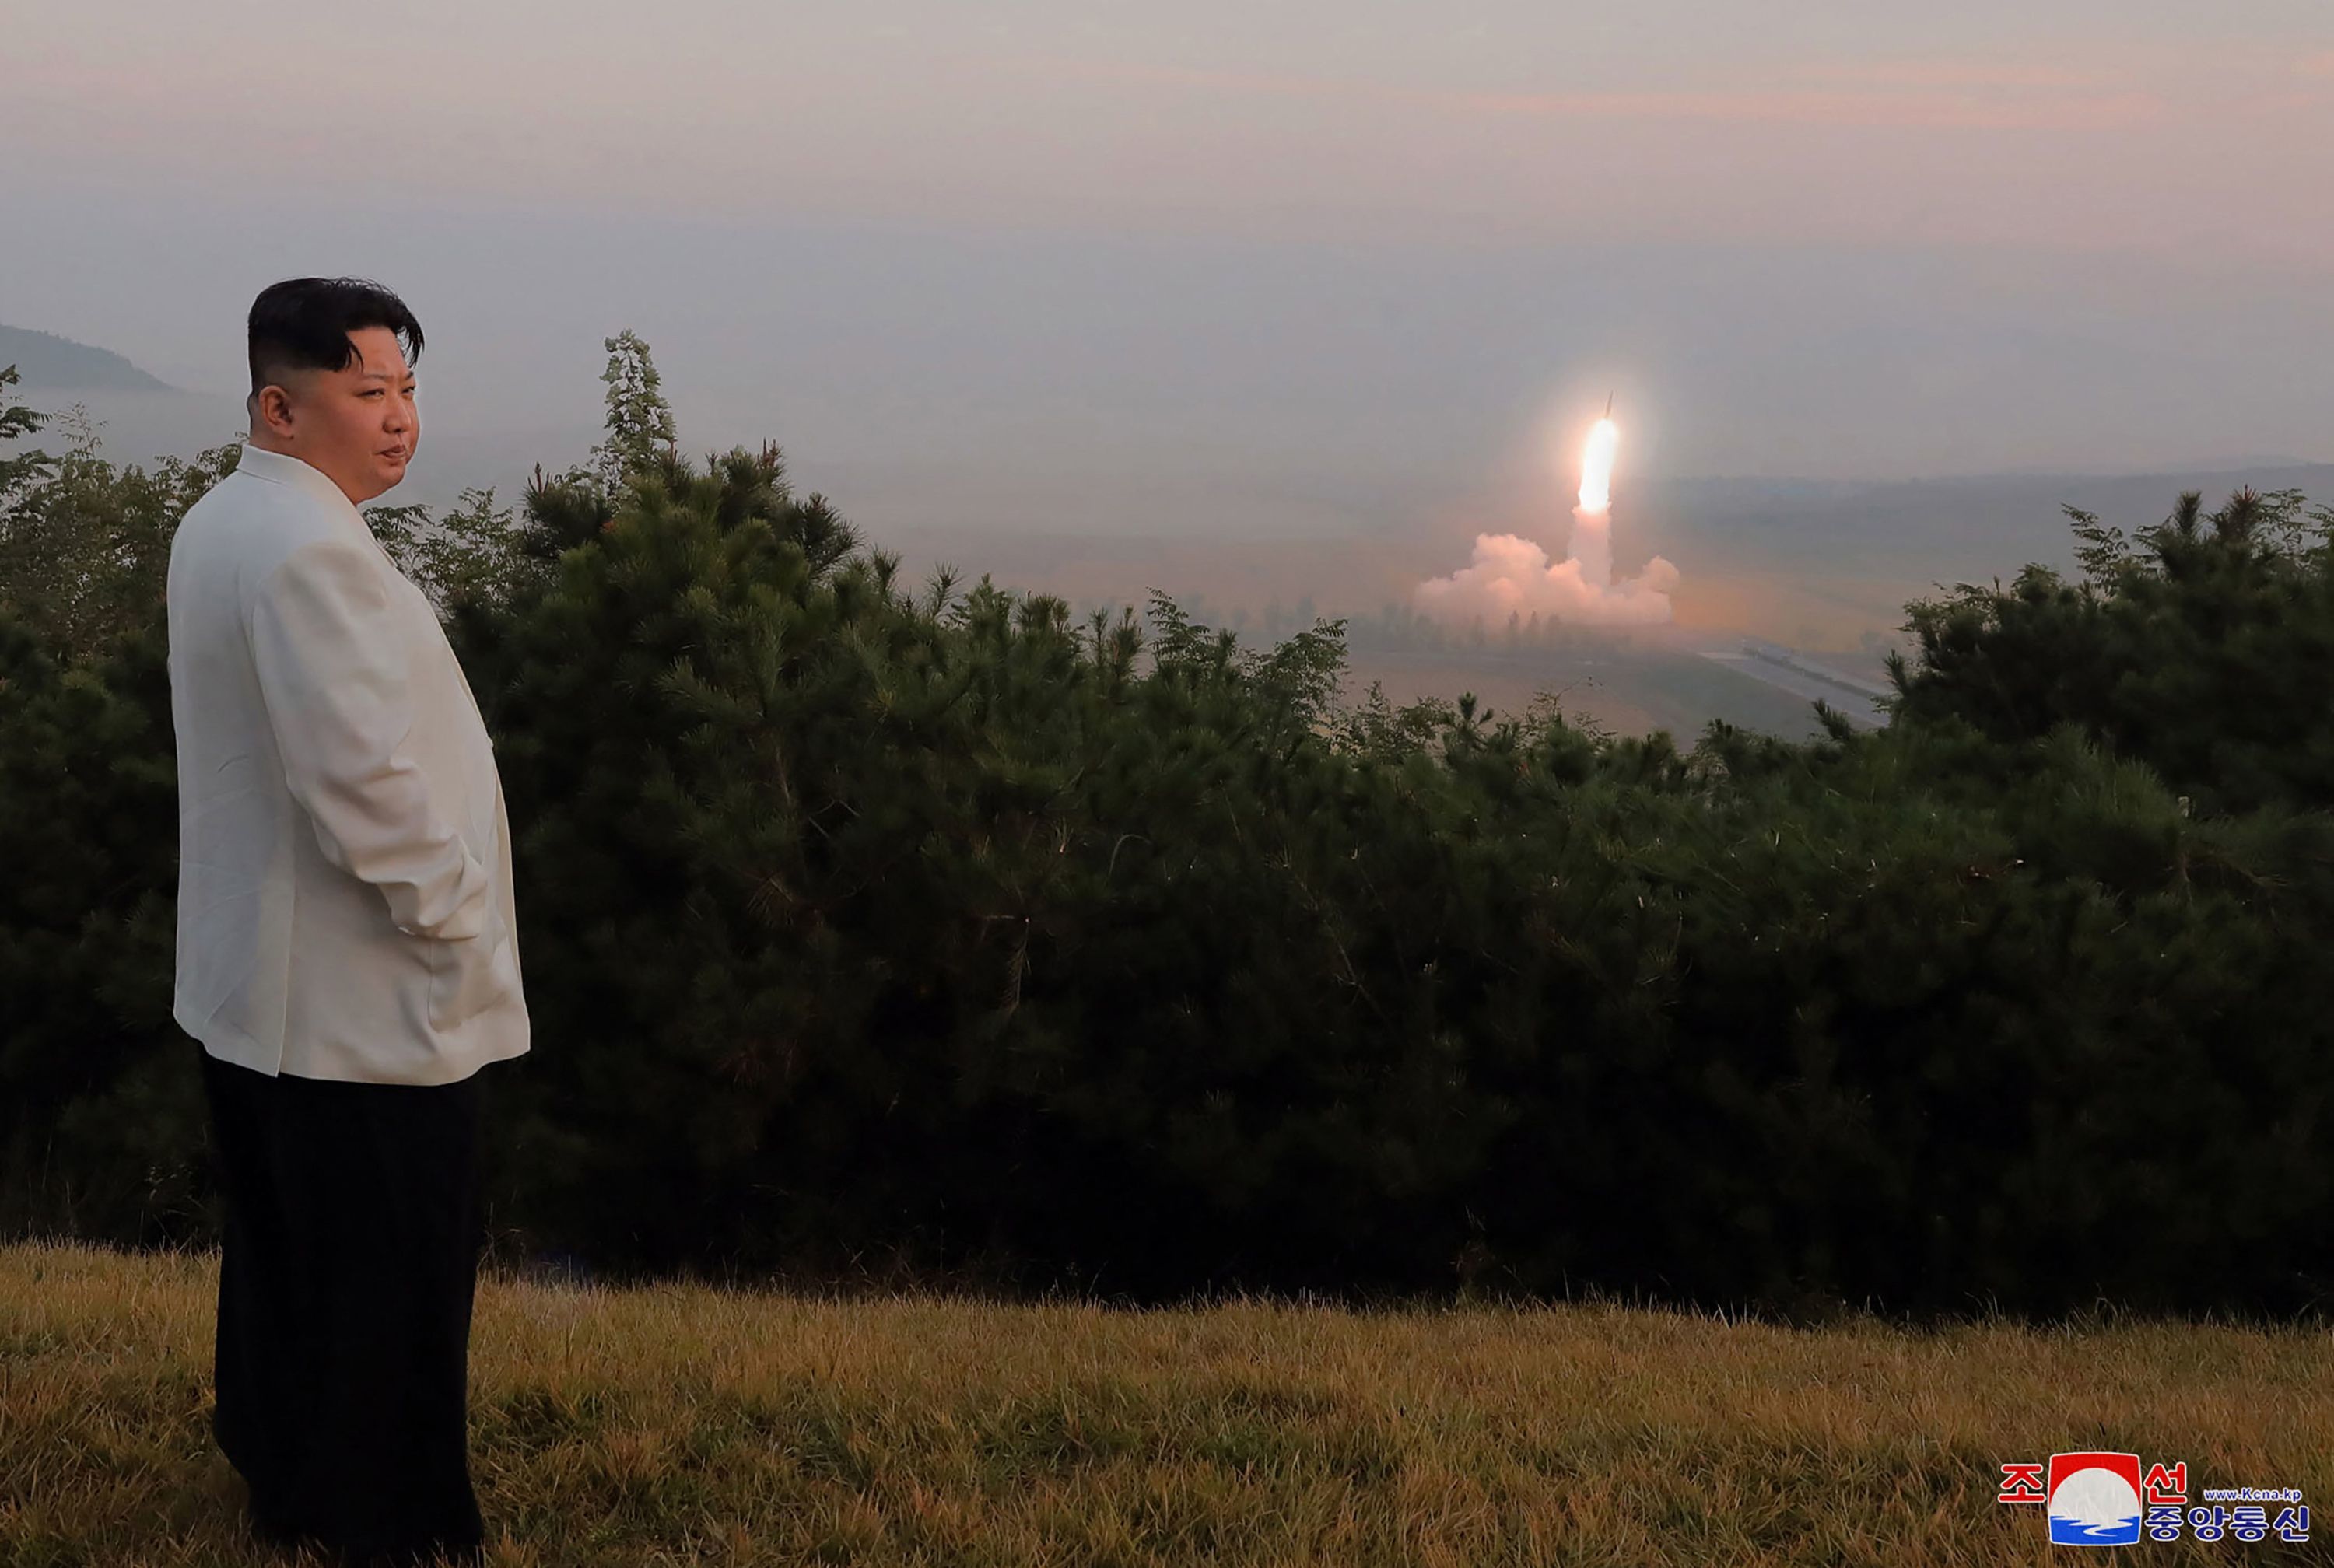 El lder norcoreano, Kim Jong-un, observa el lanzamiento de un misil.